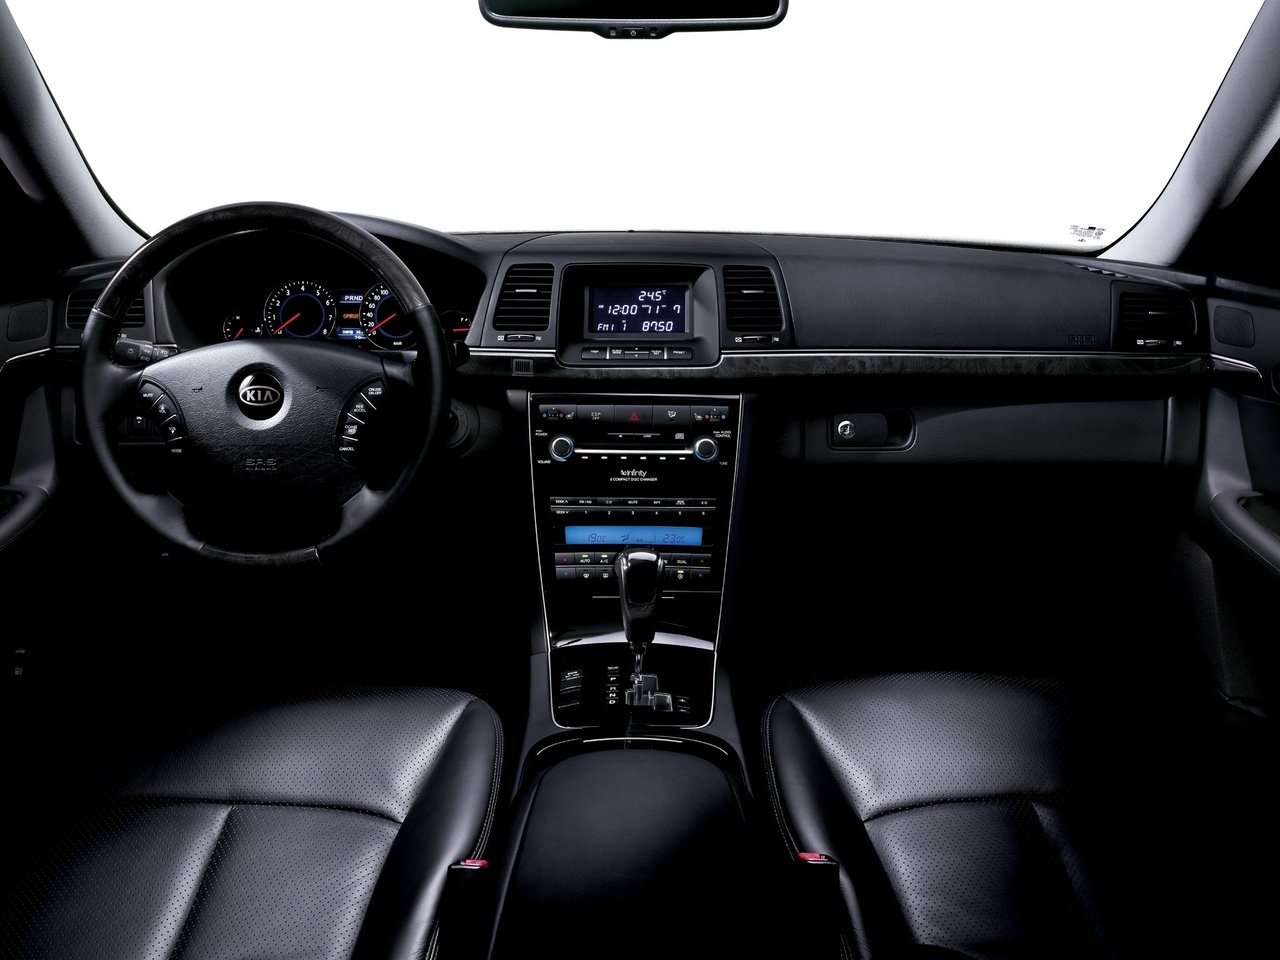 Kia Opirus interior - Cockpit